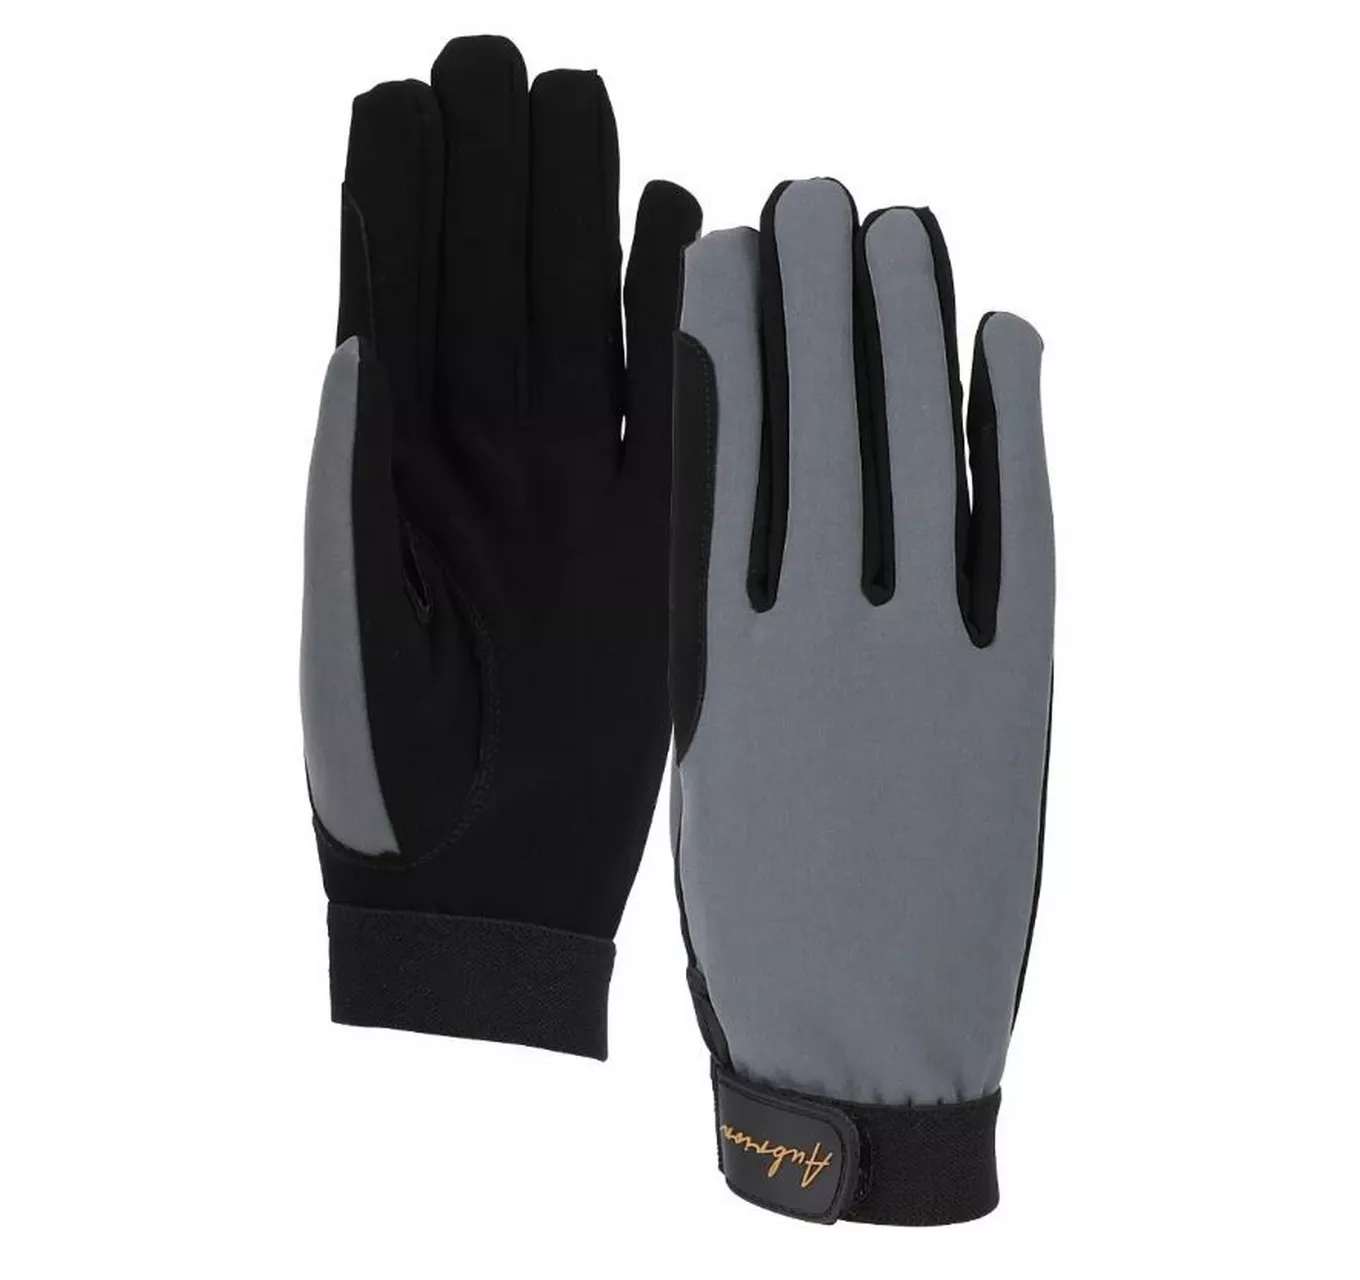 Team Winter Gloves